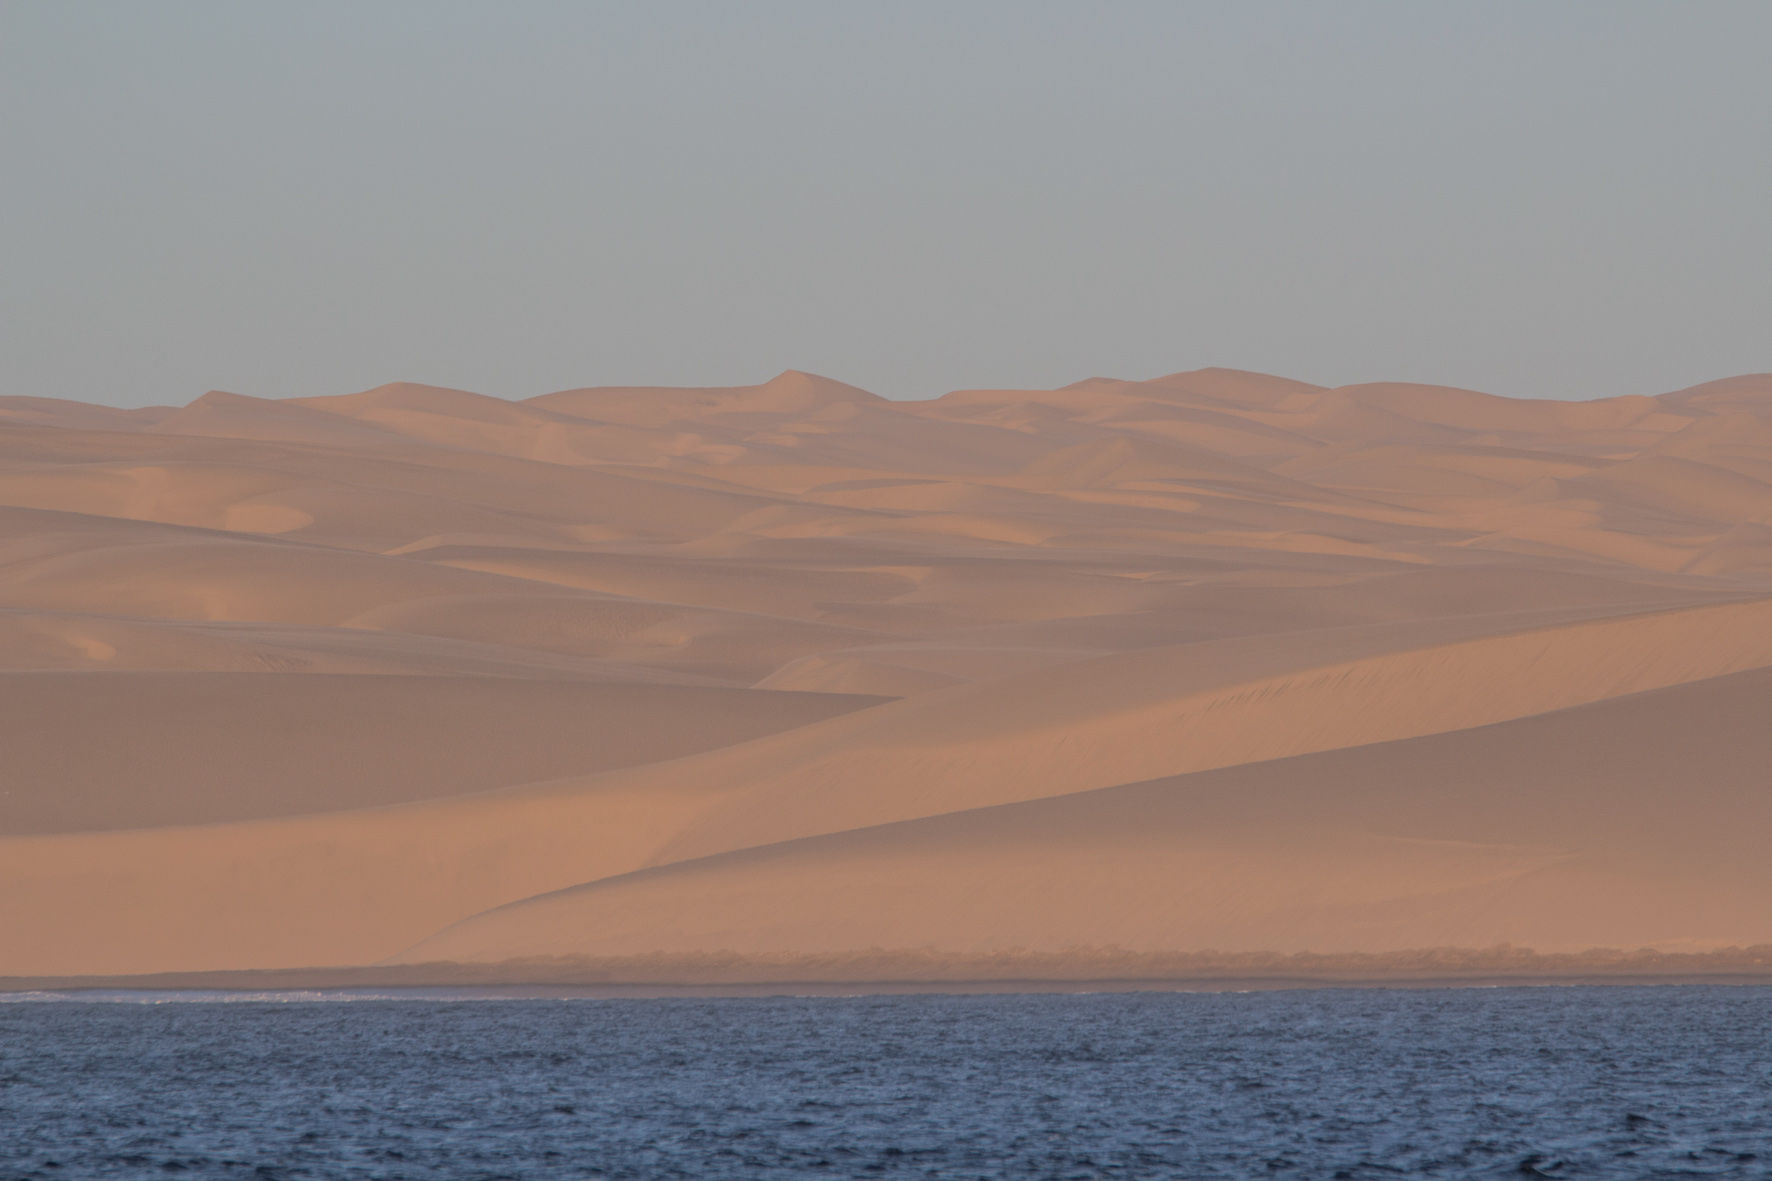 Au mouillage de Hottentot Bay en Namibie, avec les incroyables dunes de sable en décor. Vertigineux !